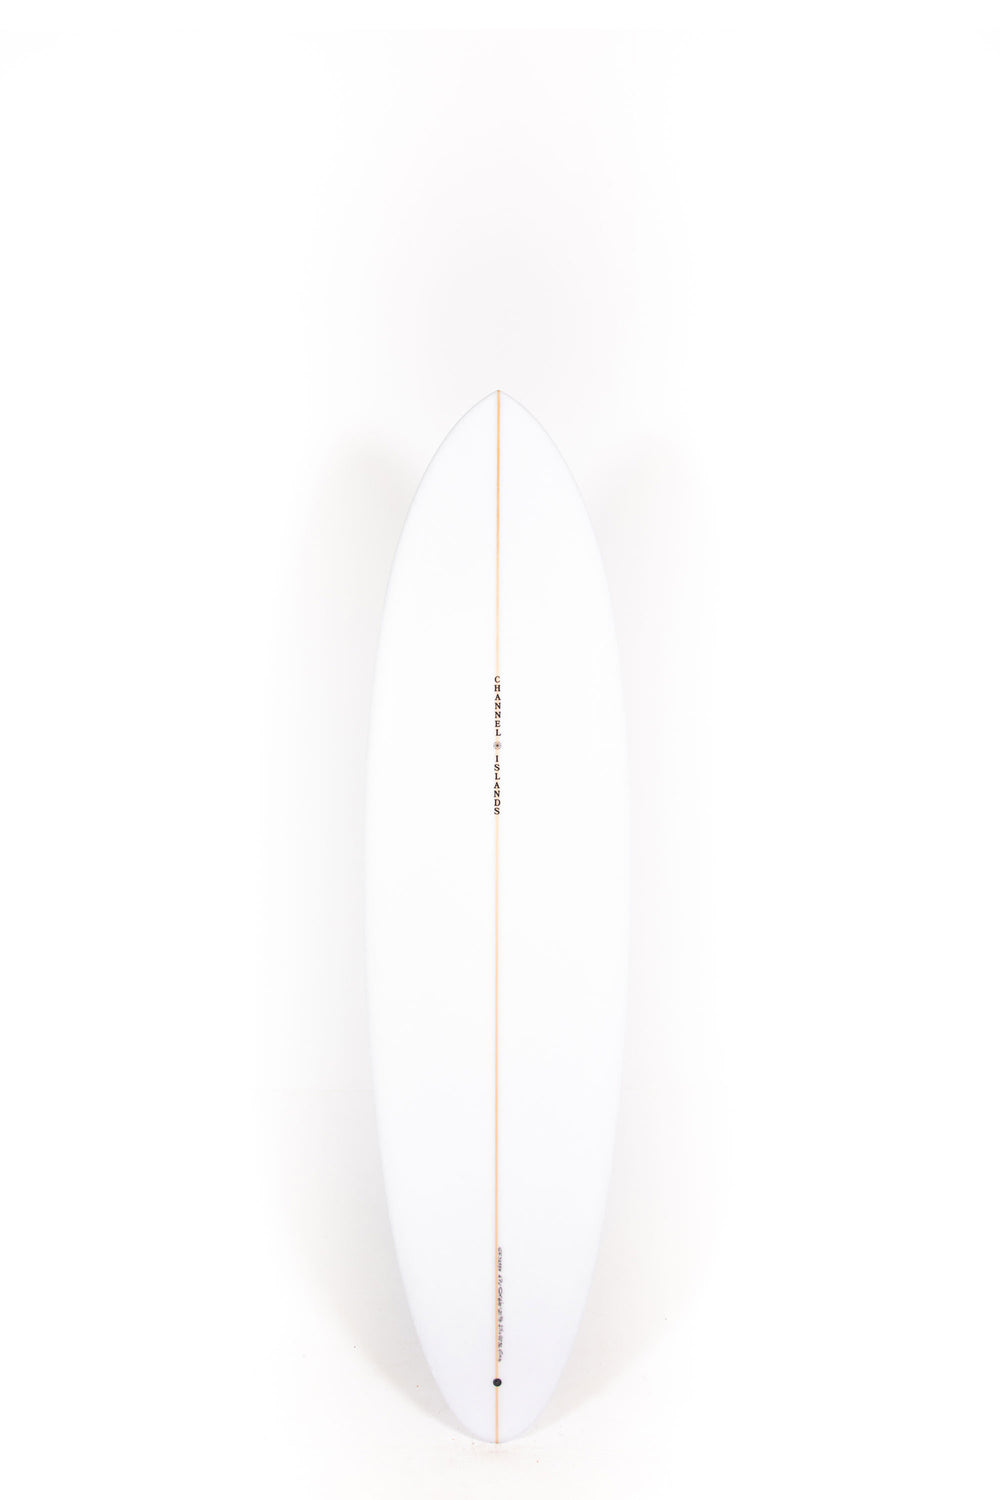 Pukas Surf Shop - Channel Islands - CI MID - 6'10